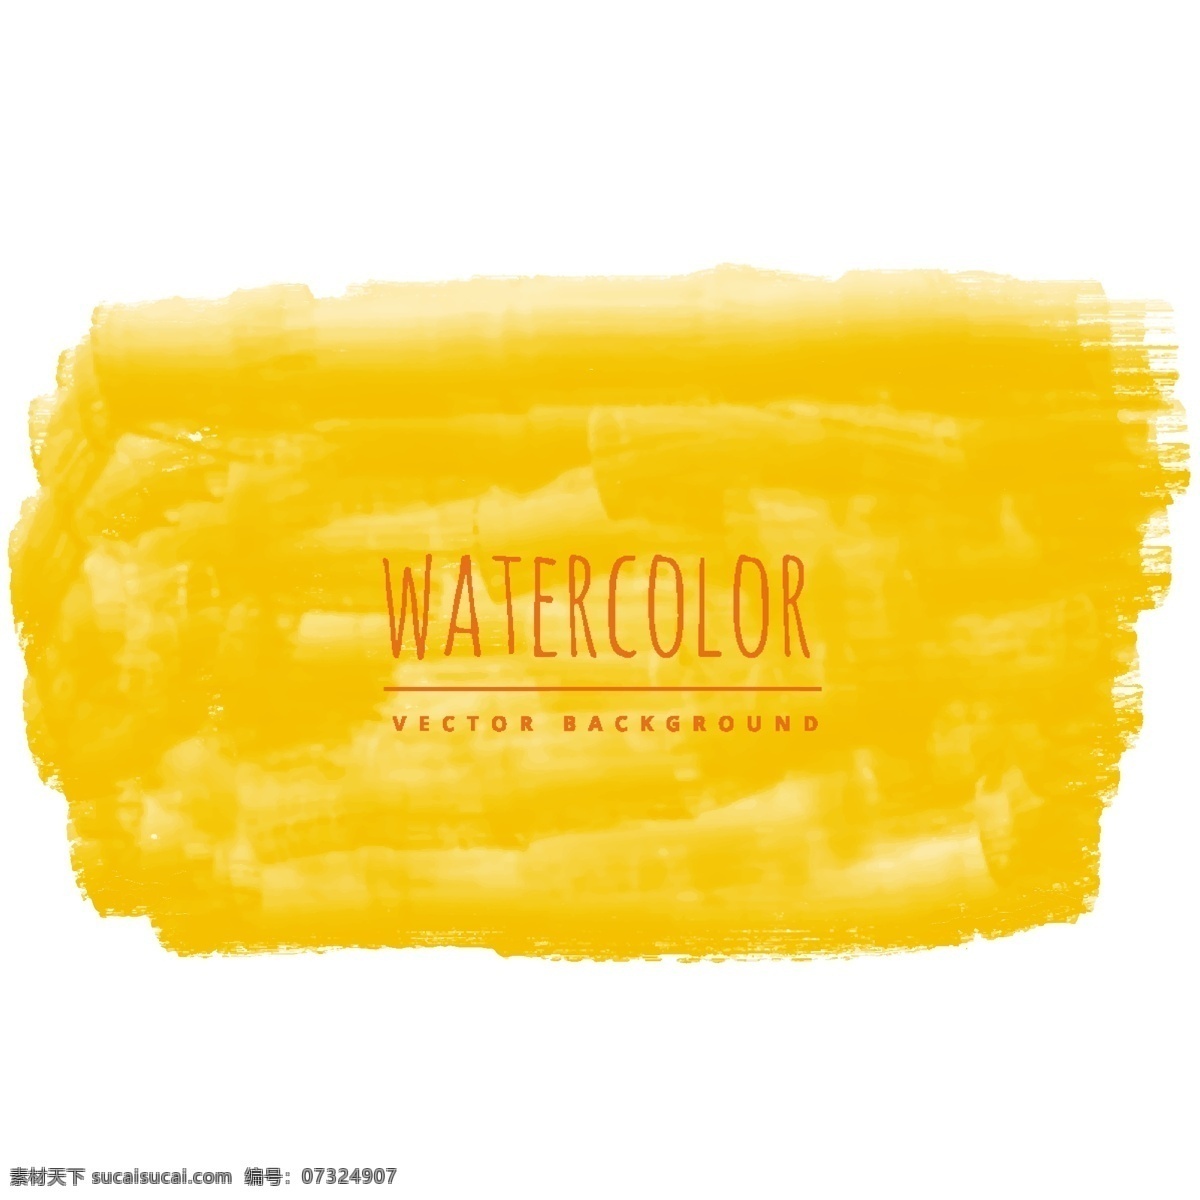 黄色 水彩 肌理 背景 抽象 水 纹理 手 纸 油漆 飞溅 刷 艺术 色彩 垃圾 墨 中风 水彩画家 手绘